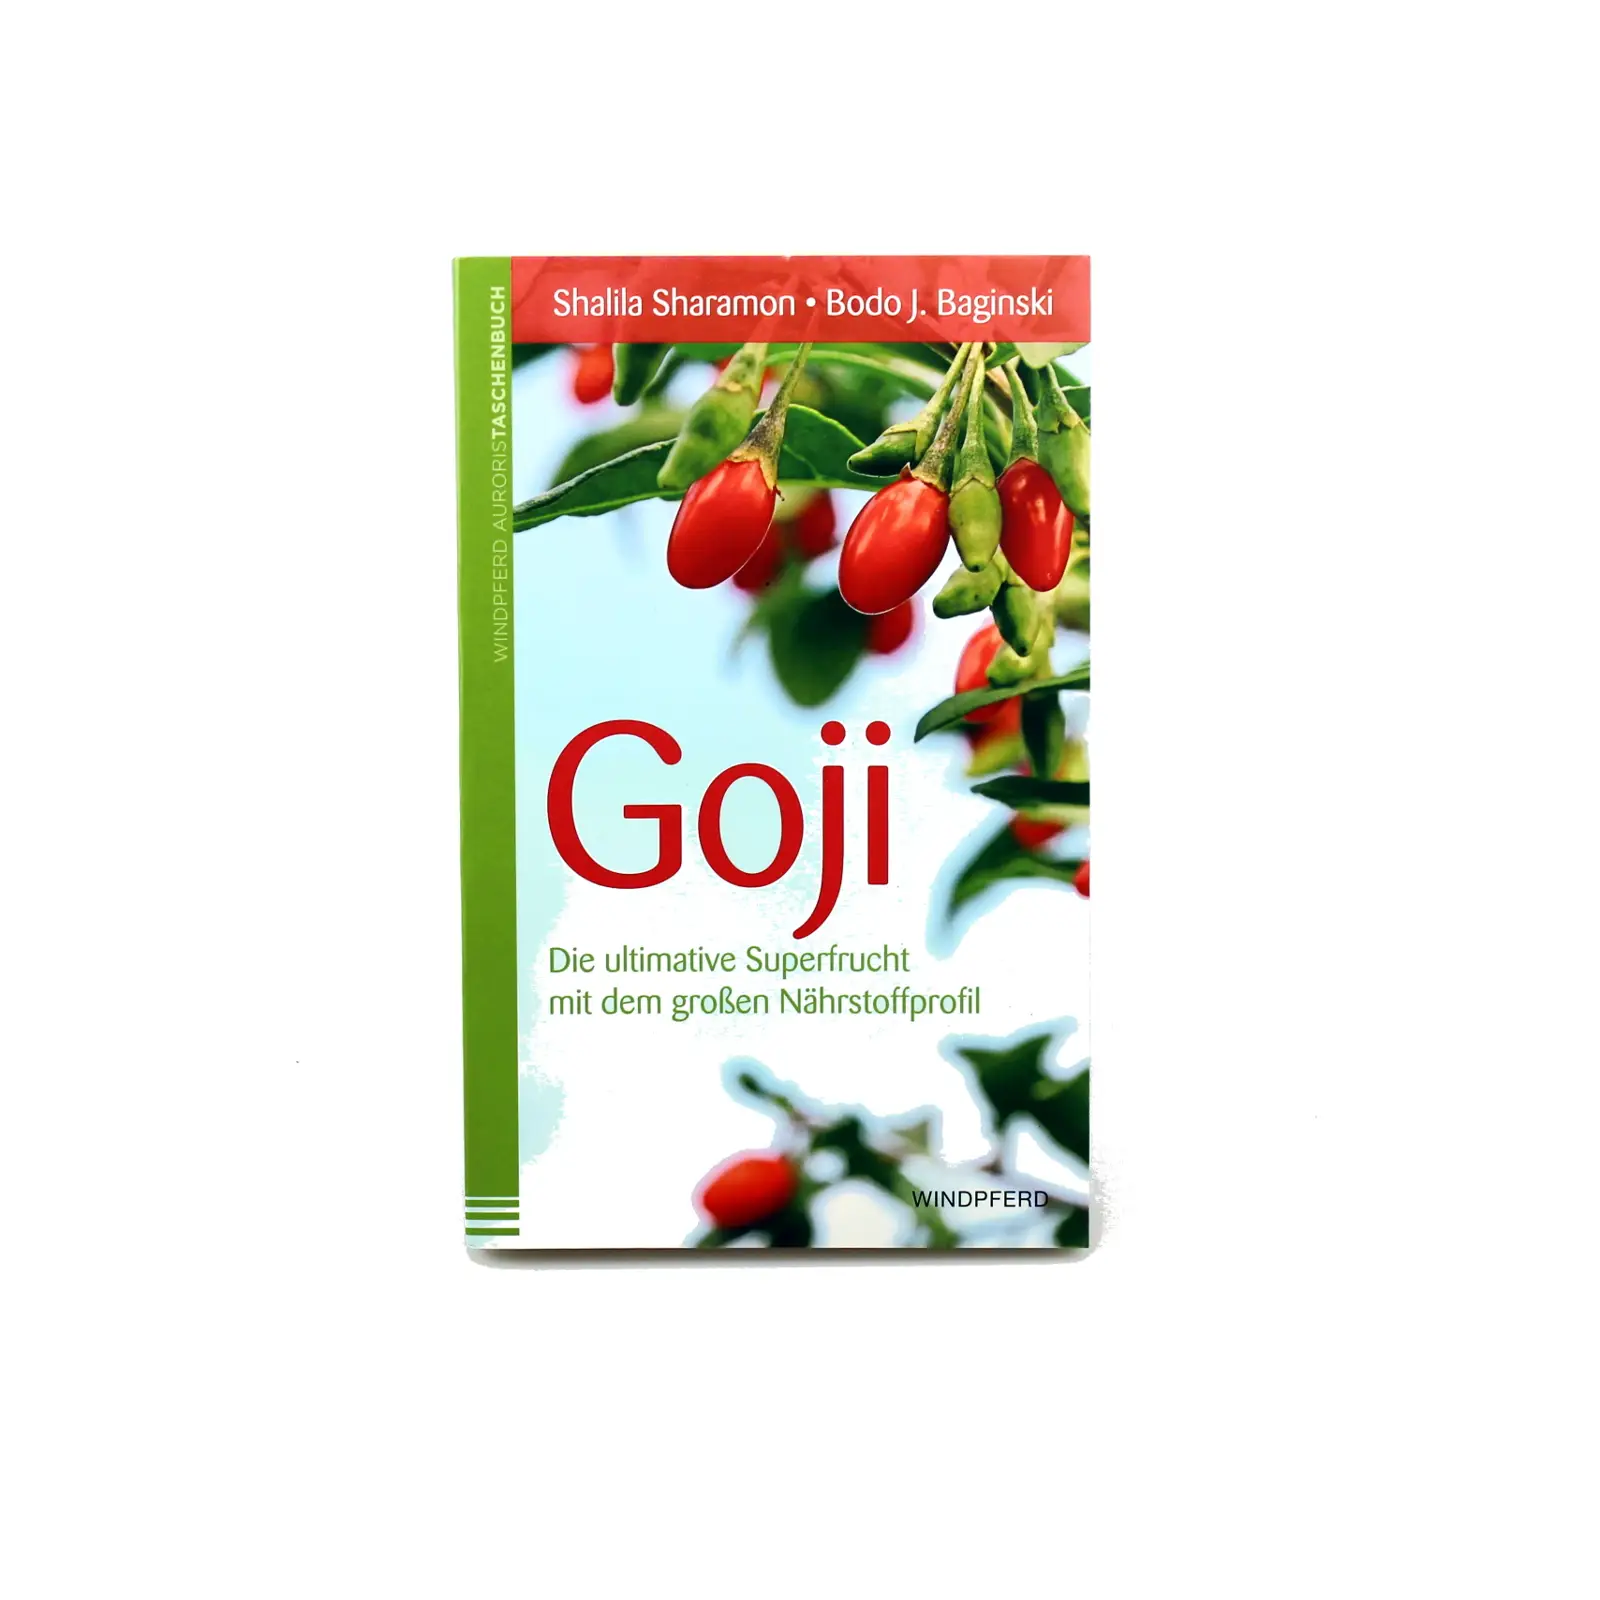 Goji - Die ultimative Superfrucht - Buch Image